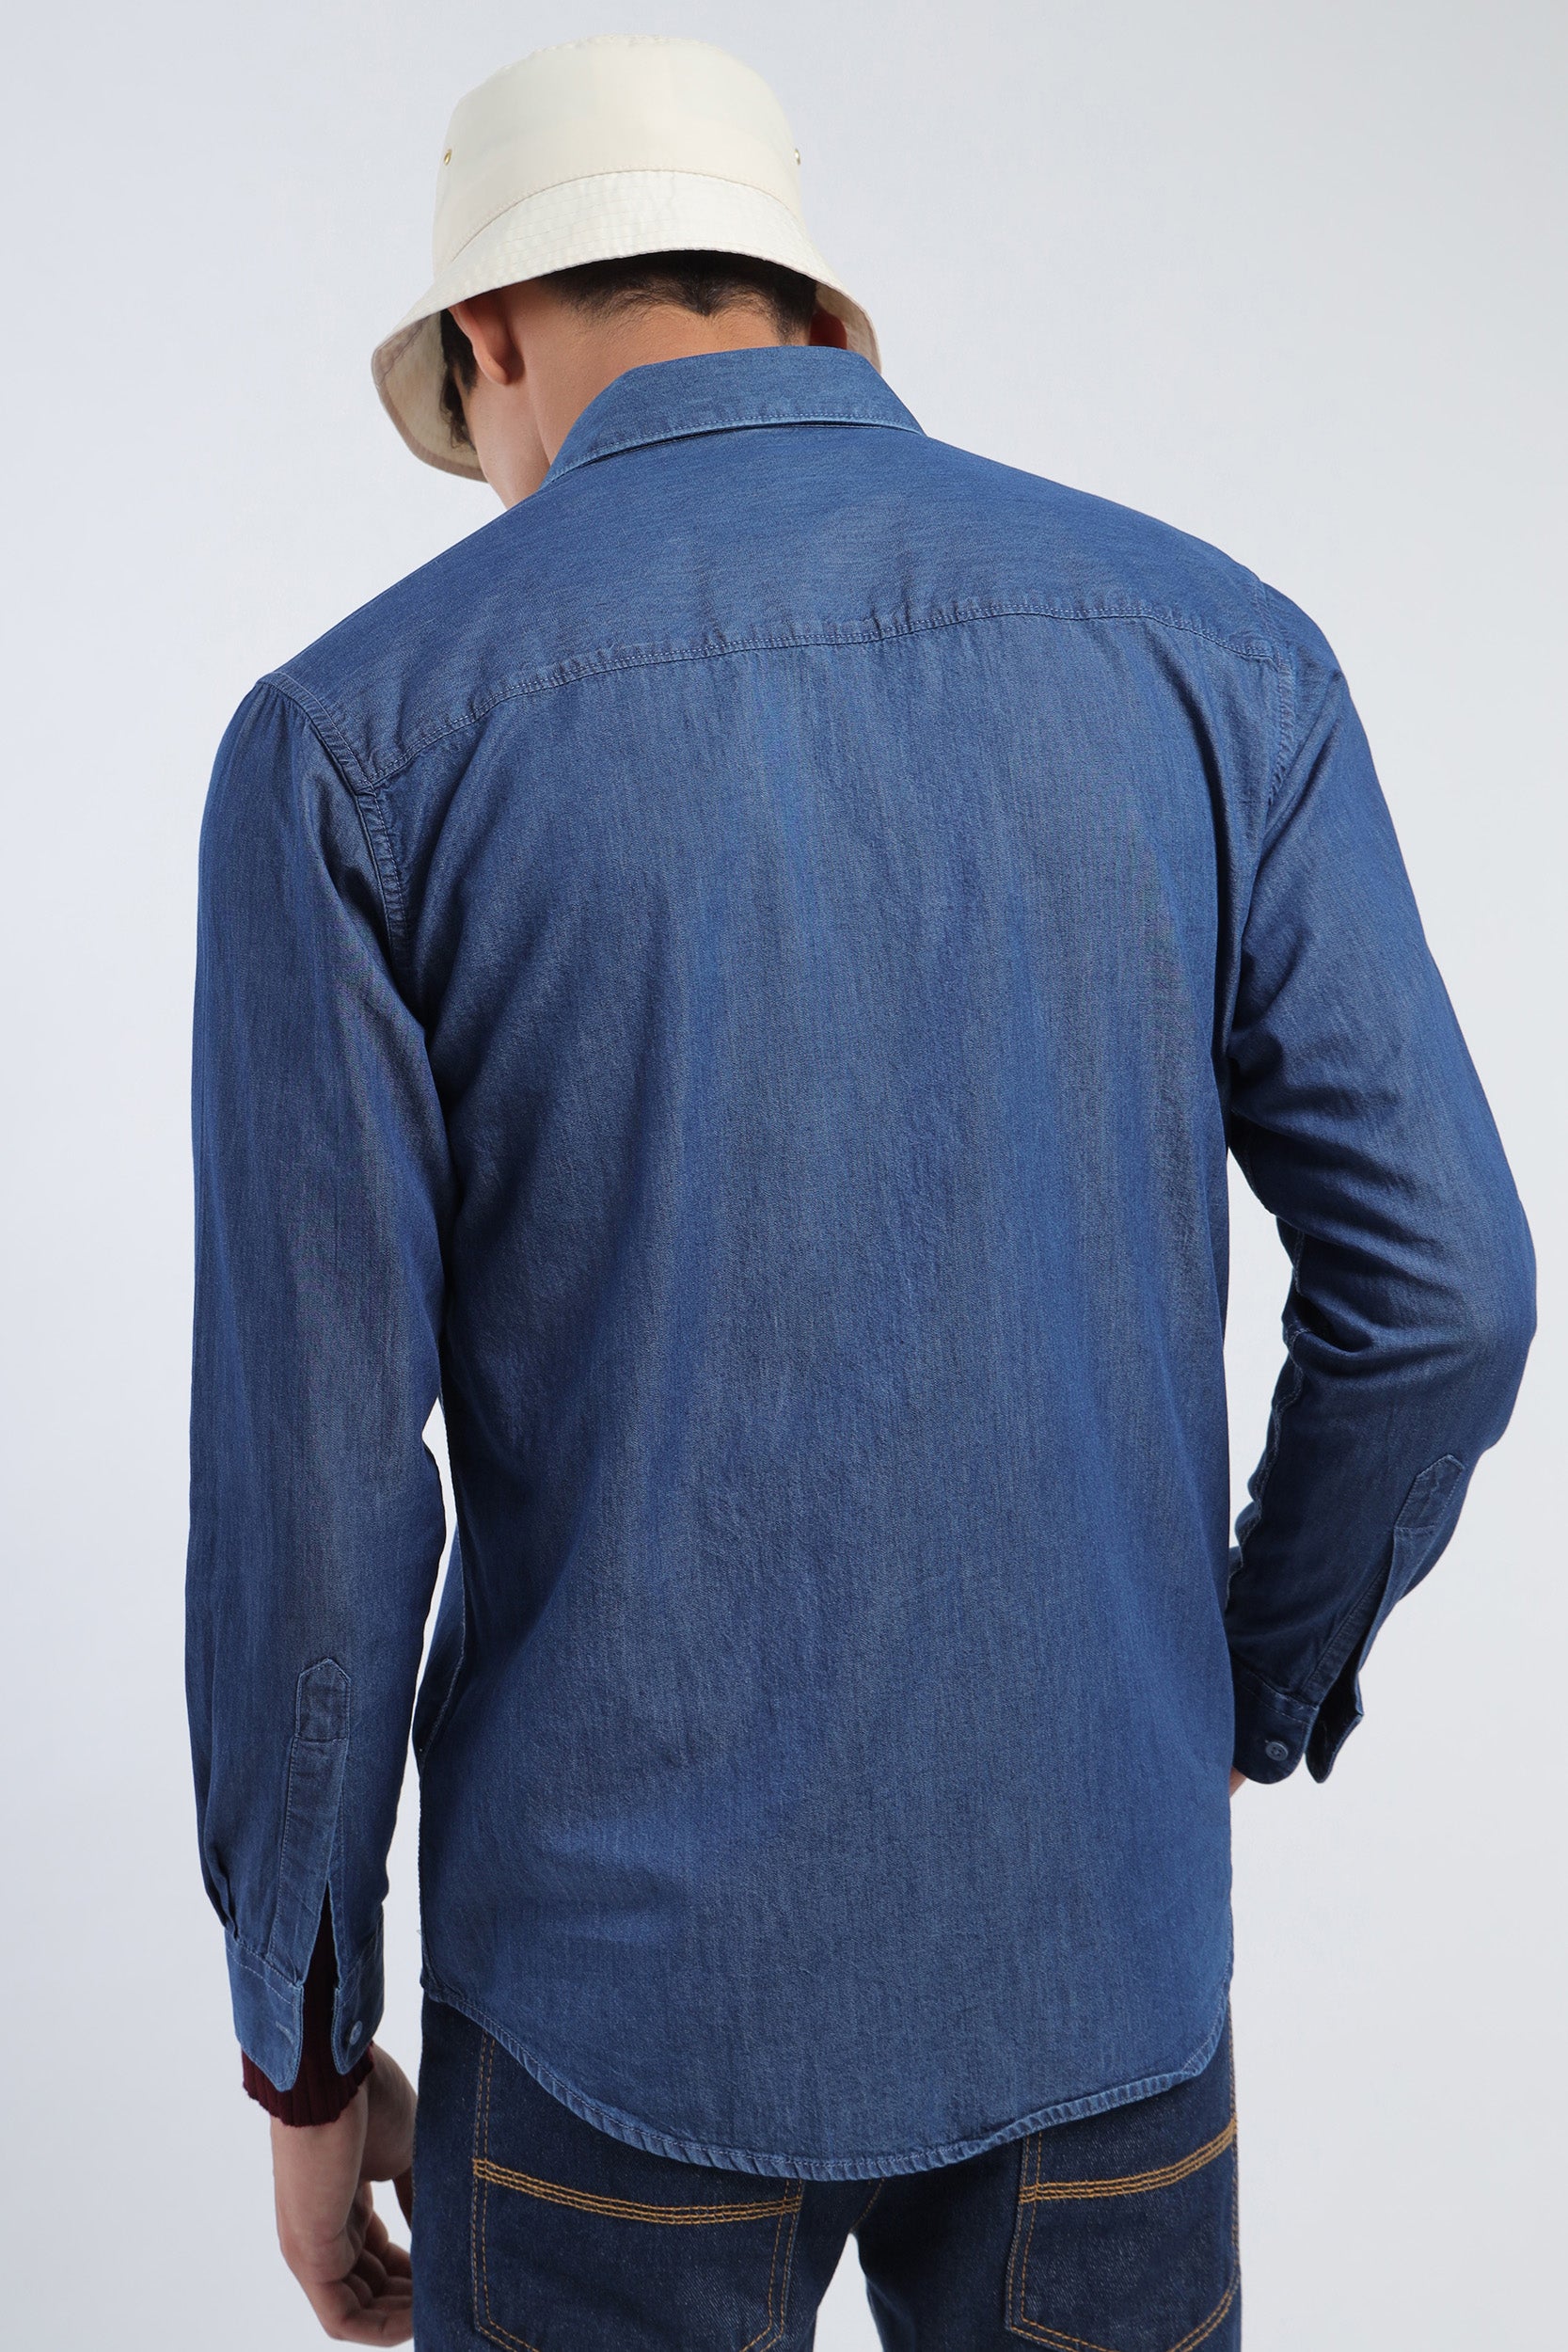 Wrangler RIGGS Workwear Denim Long-Sleeve Work Shirt for Men | Cabela's